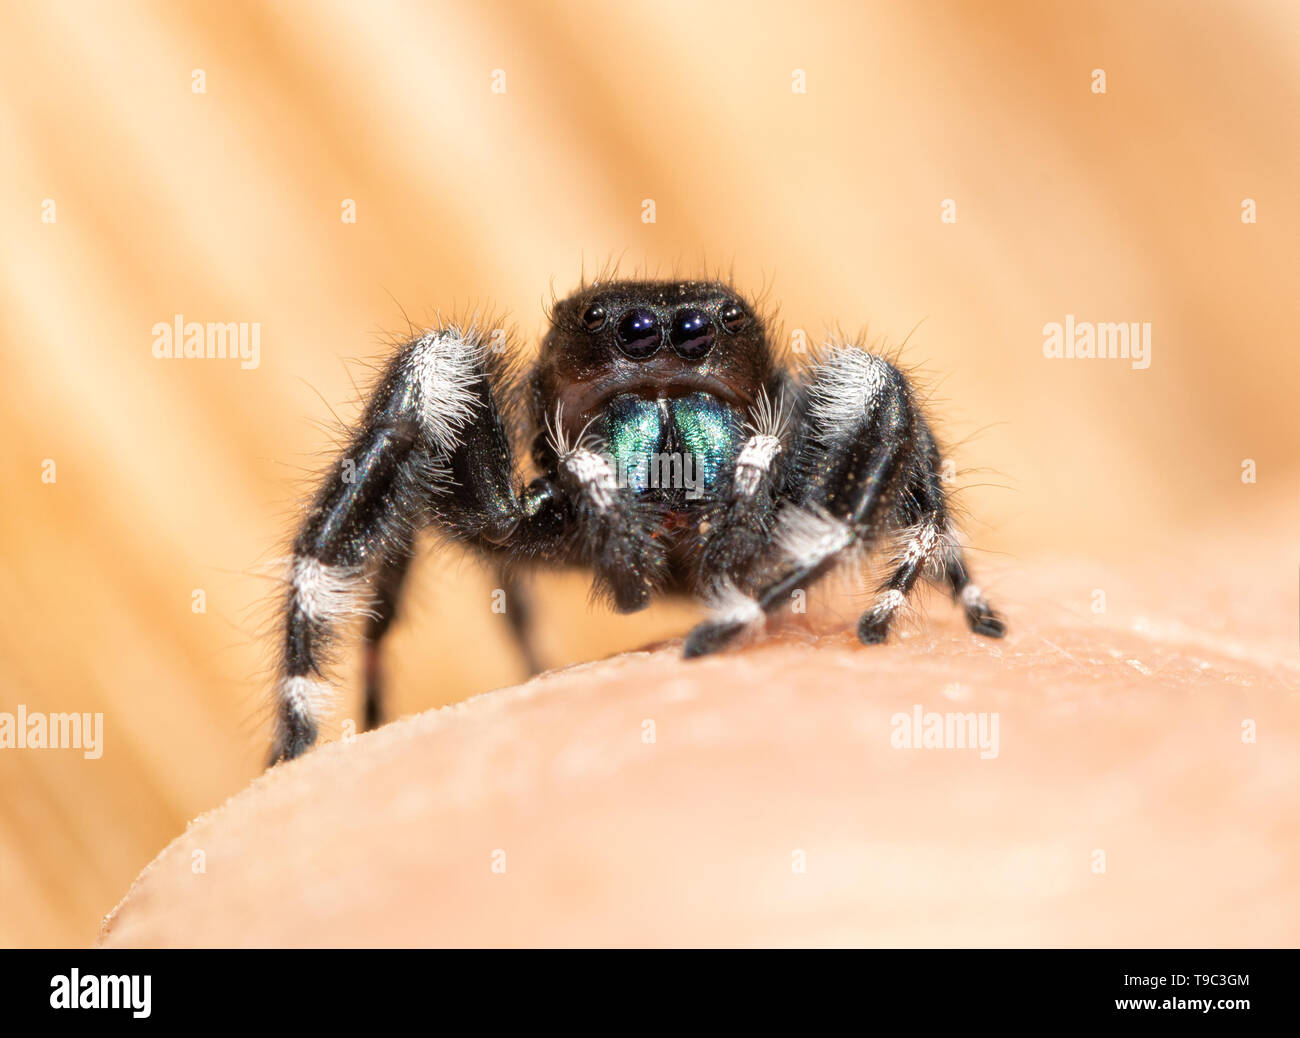 Sorprendentemente hermosa negrita Jumping spider, Phidippus audax, reposando encima de una mano humana, mirando el visor Foto de stock